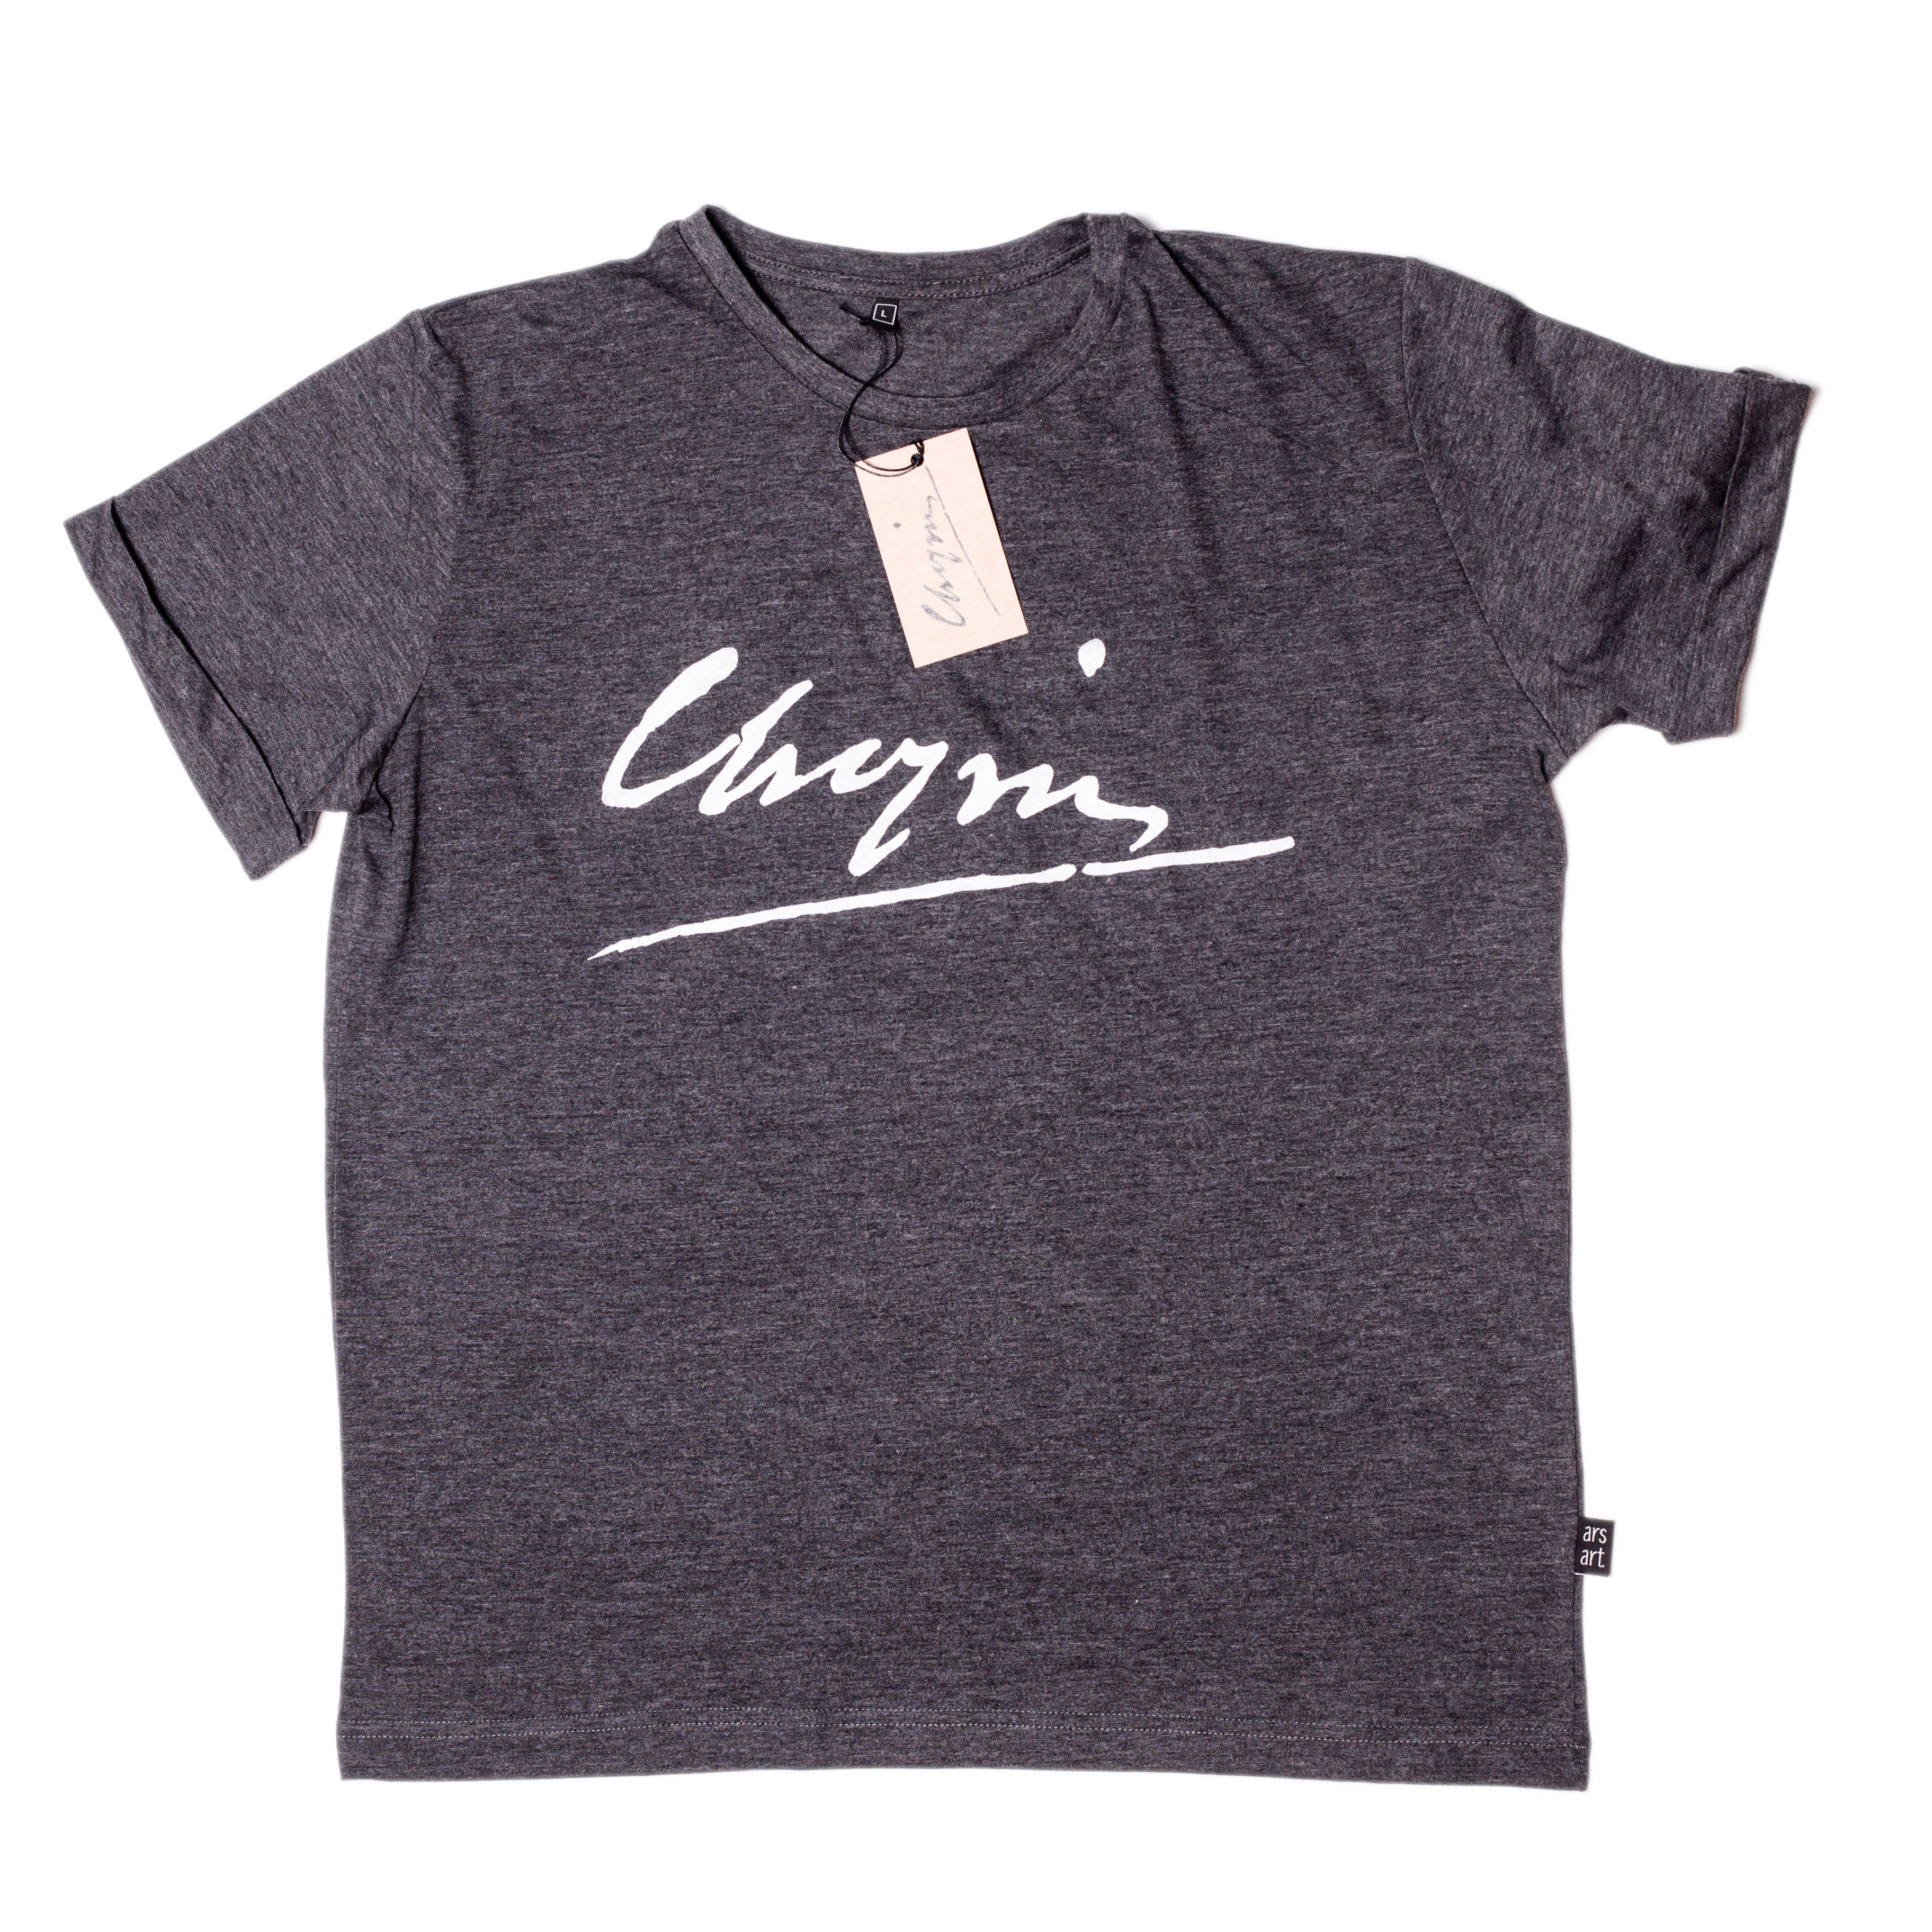 Chopin T-Shirt 3